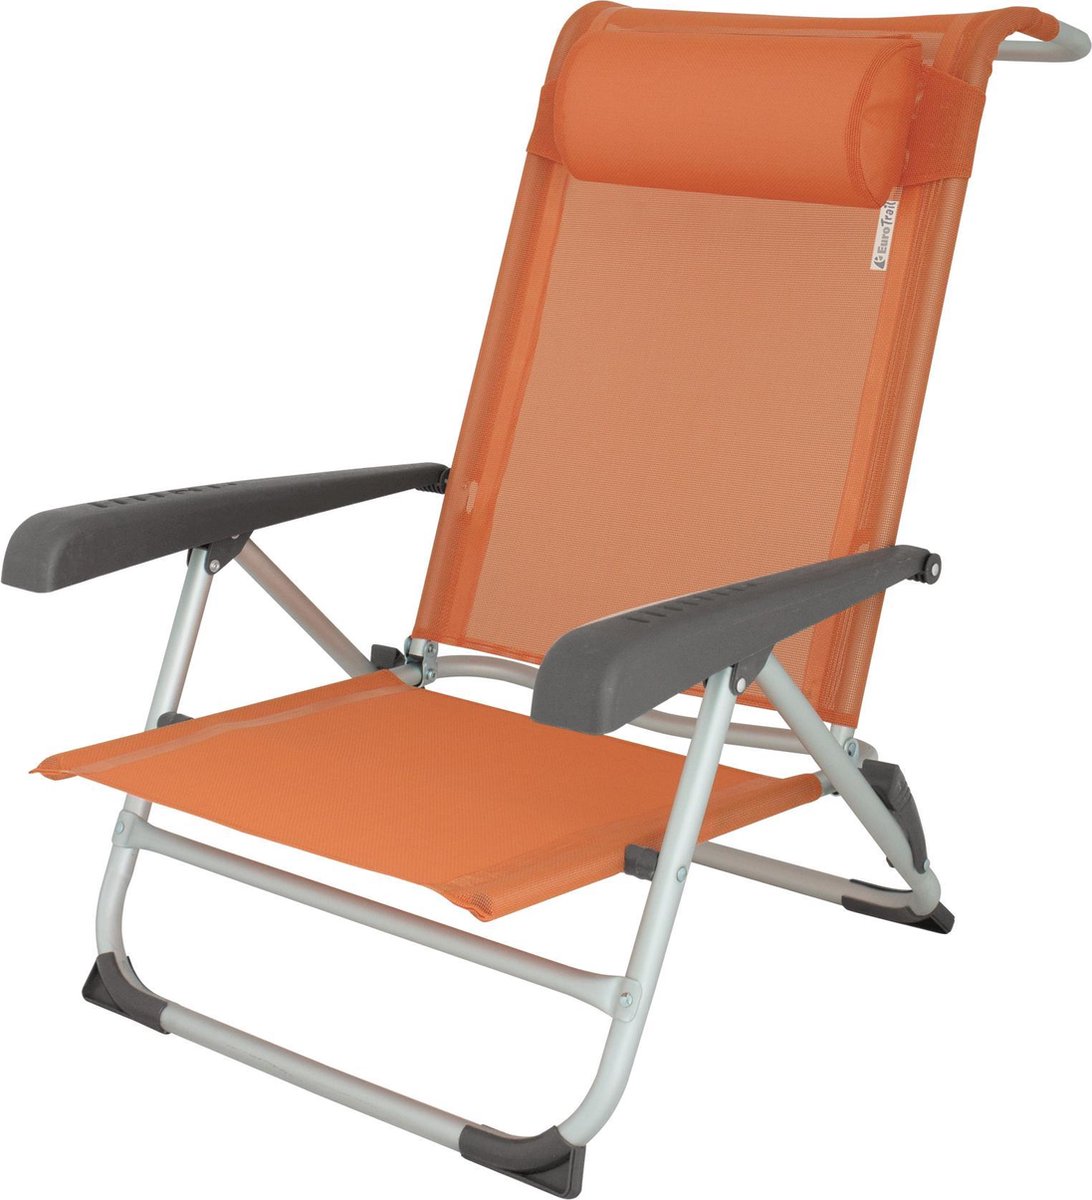 Eurotrail campingstoel Acapulco 74 x 60 cm aluminium - Oranje